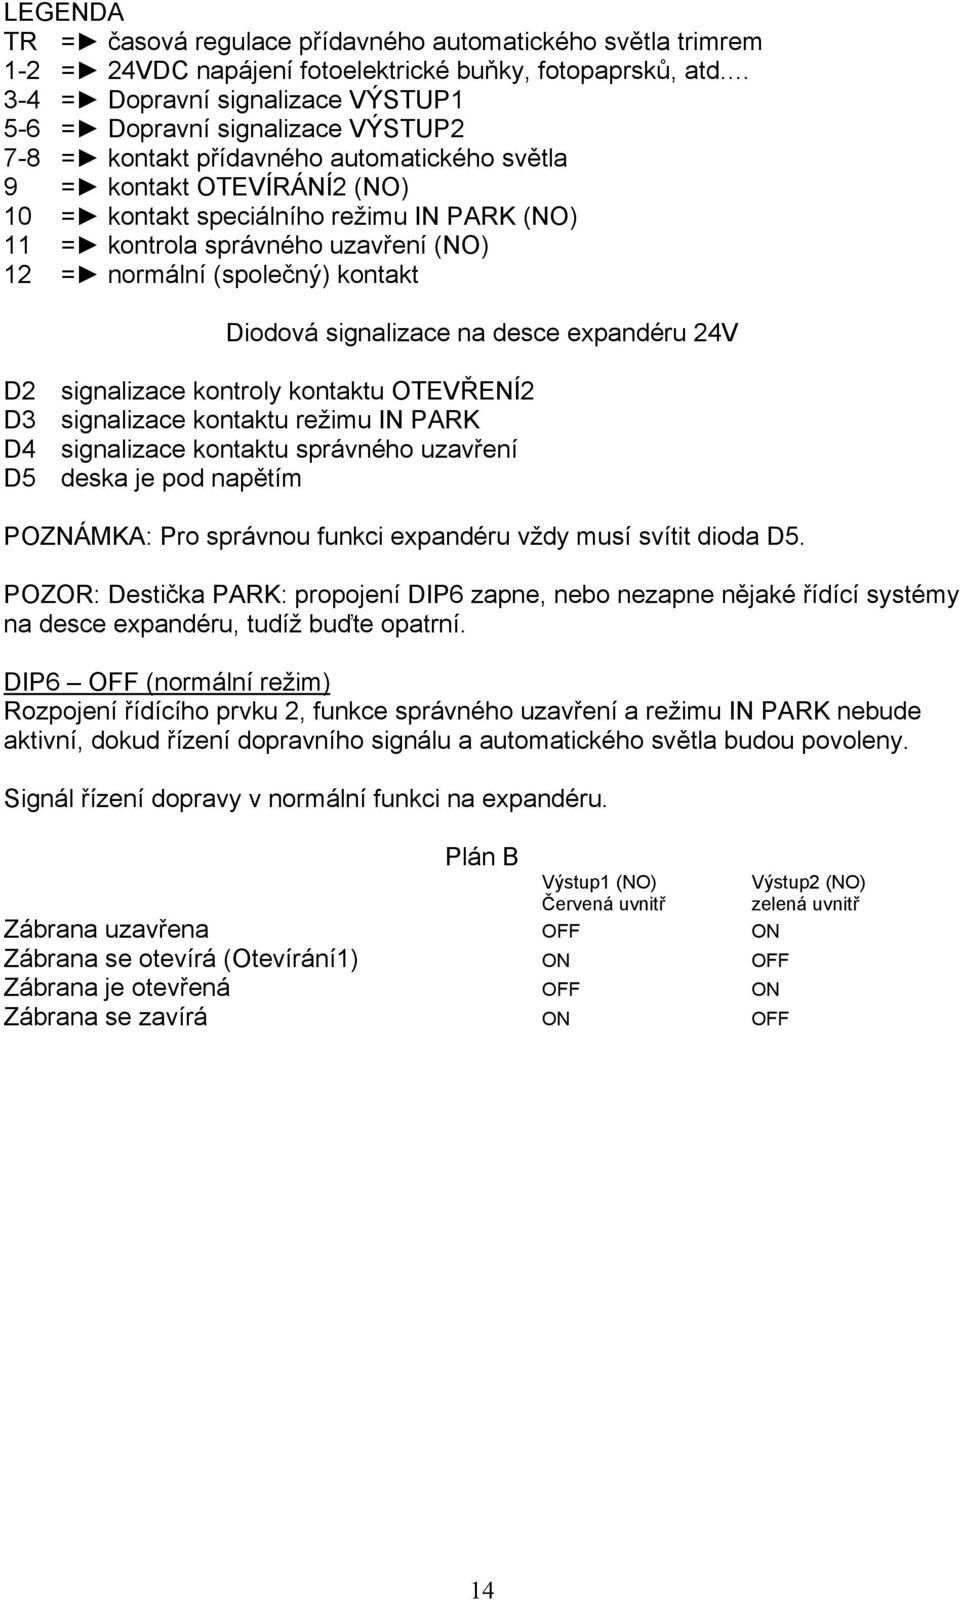 kontrola správného uzavření (NO) 12 = normální (společný) kontakt Diodová signalizace na desce expandéru 24V D2 signalizace kontroly kontaktu OTEVŘENÍ2 D3 signalizace kontaktu režimu IN PARK D4